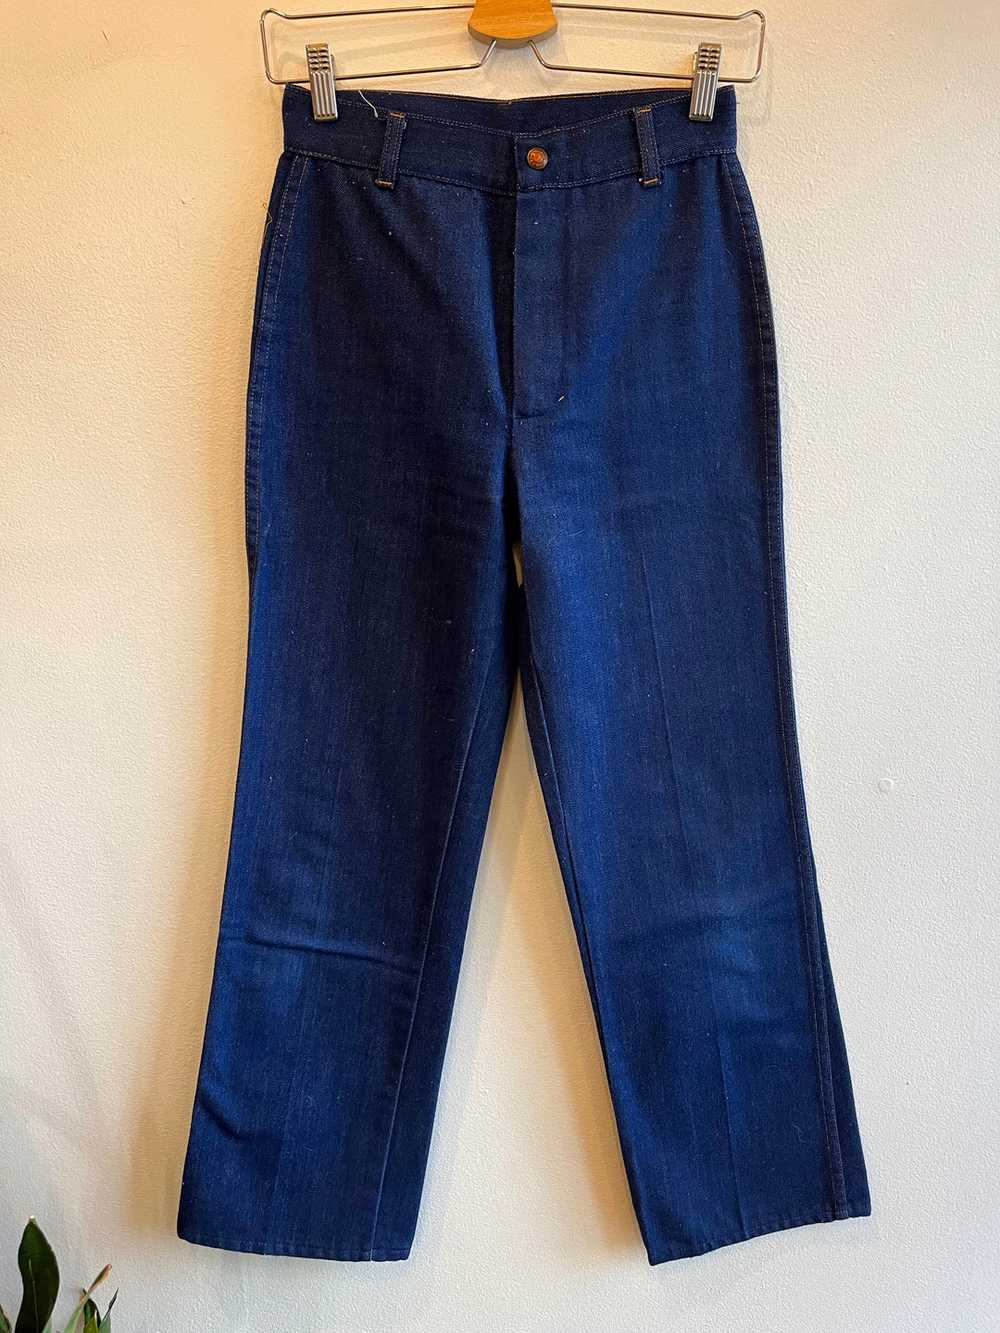 Vintage 1960/1970’s Tough Skins Denim Jeans - image 1